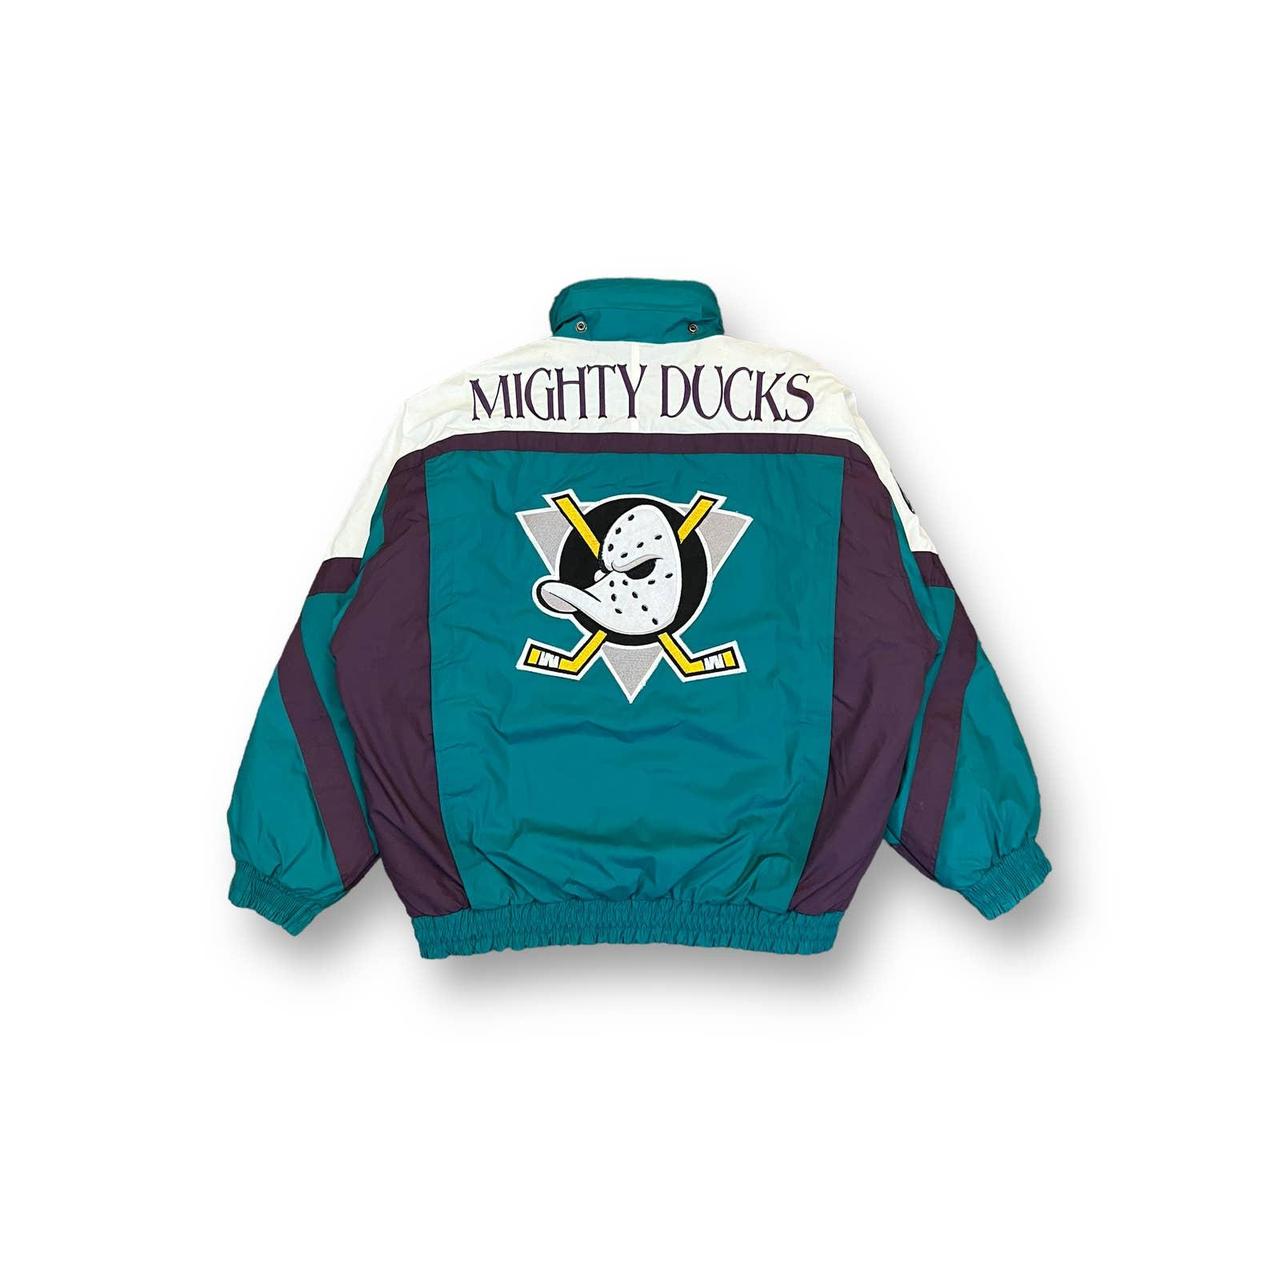 Vintage 1990s Anaheim Mighty Ducks Starter Pouch Jacket Size 